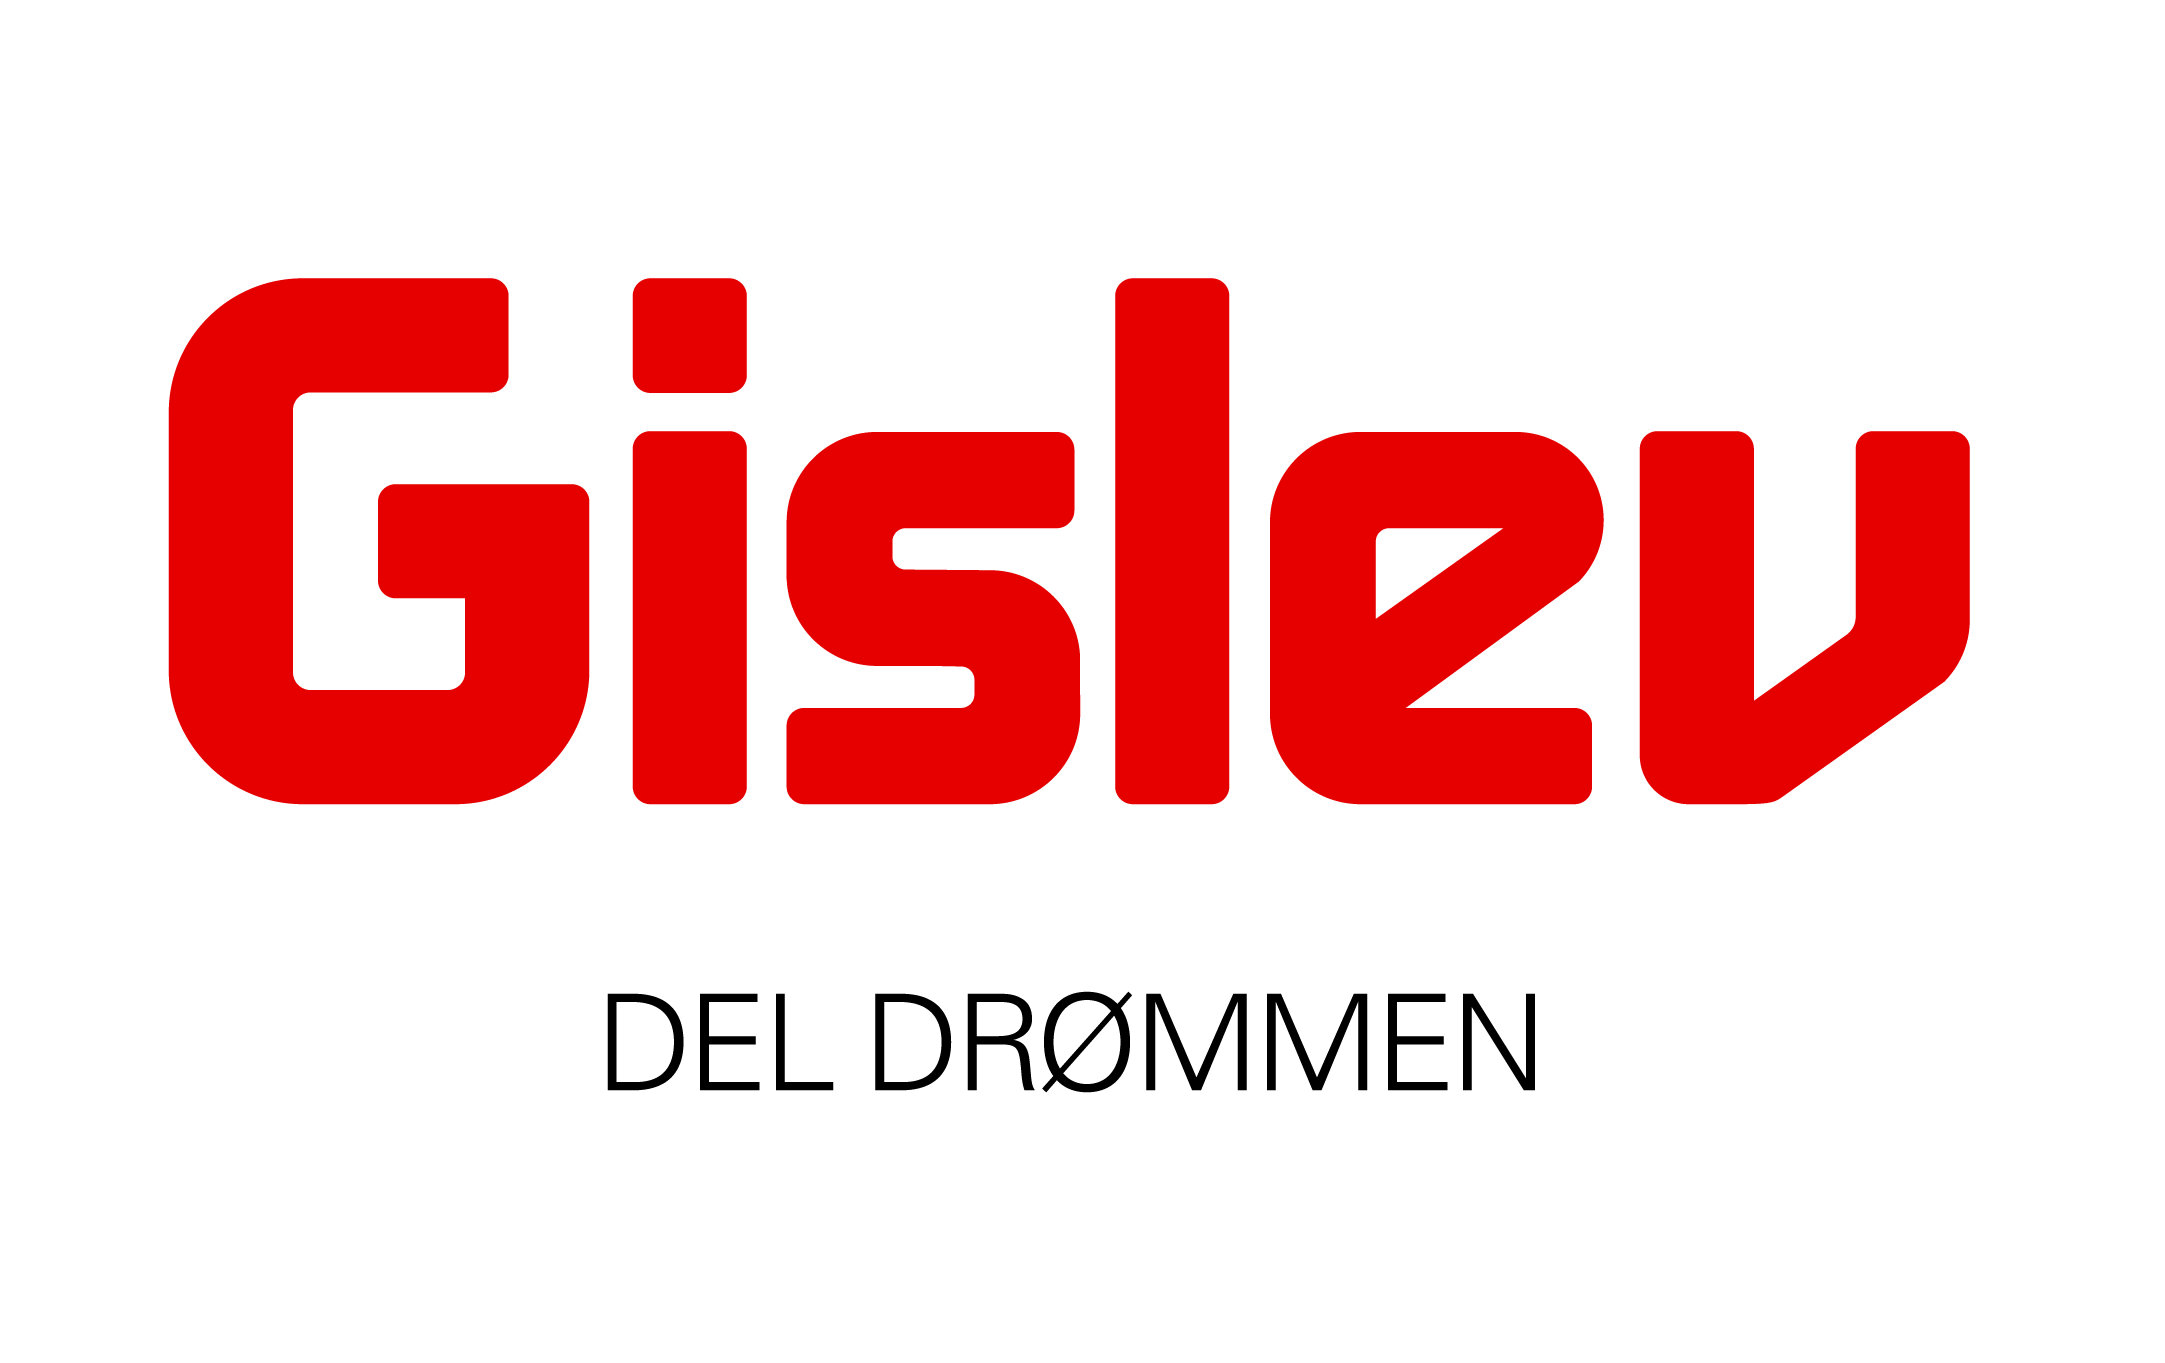 Gislev Rejser logo